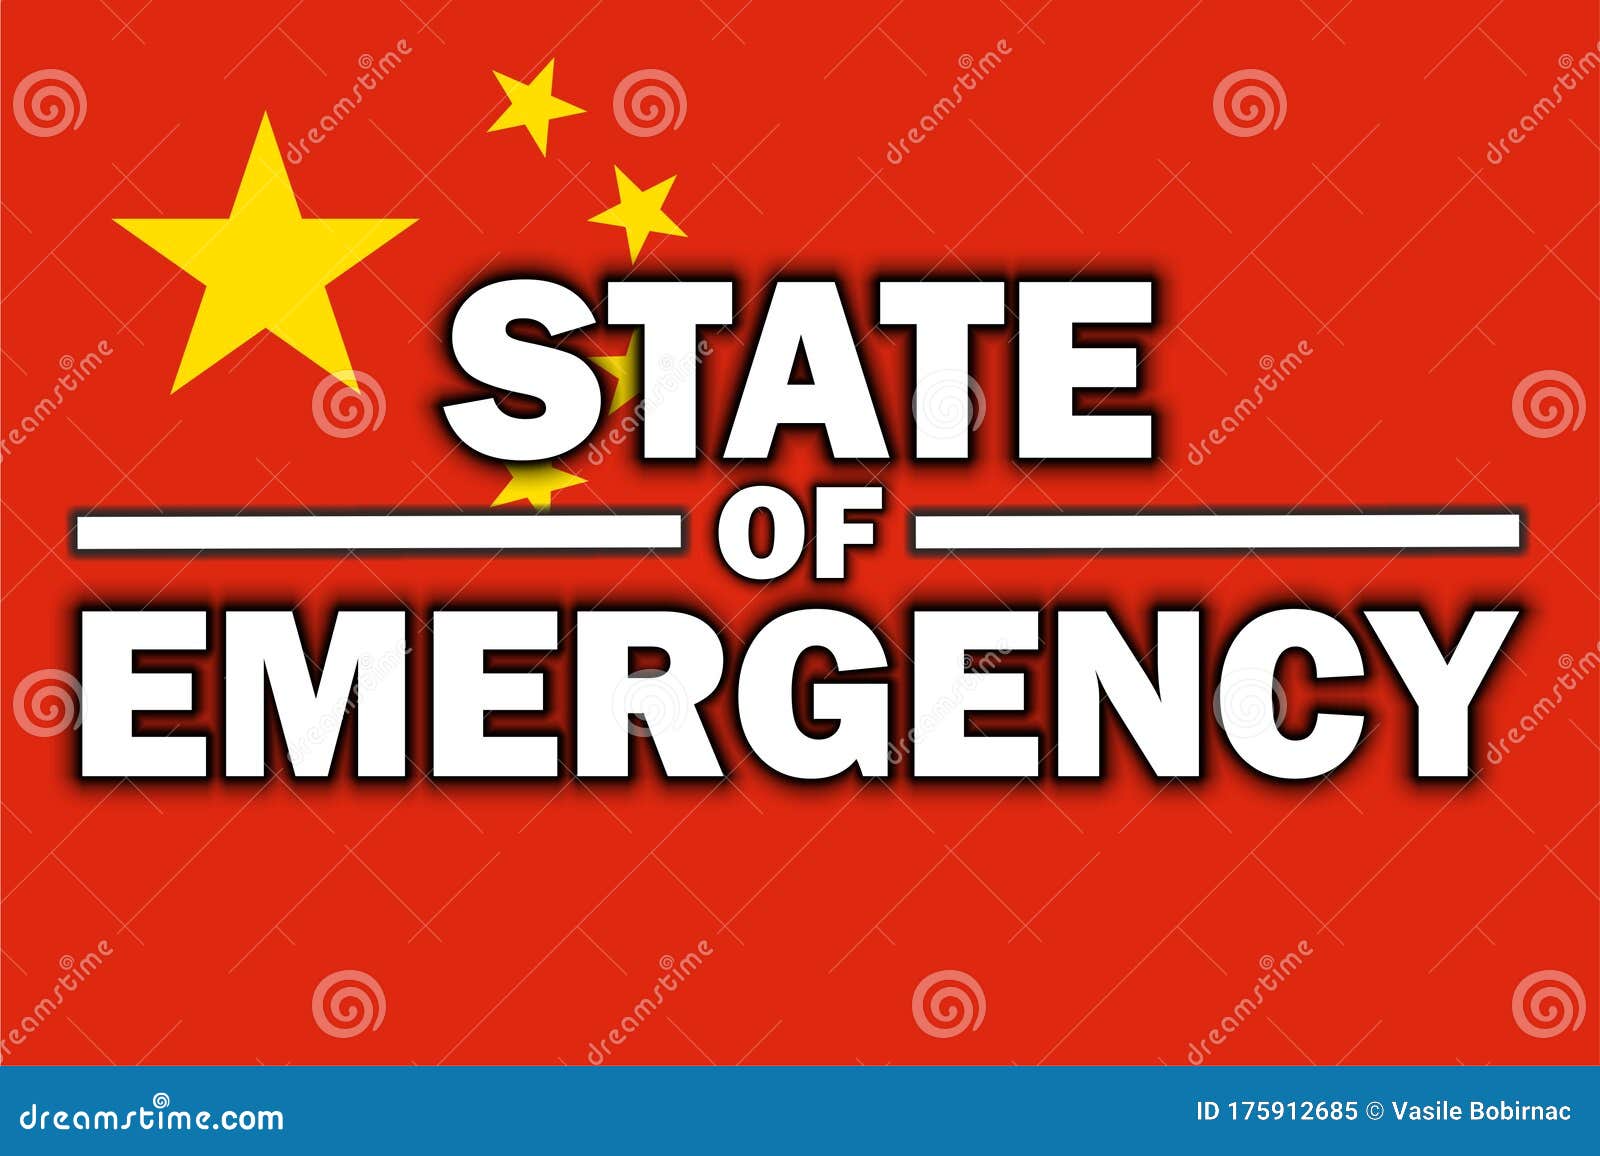 这国宣布进入紧急状态！中国大使馆提醒→_雷克雅内斯_地震_火山